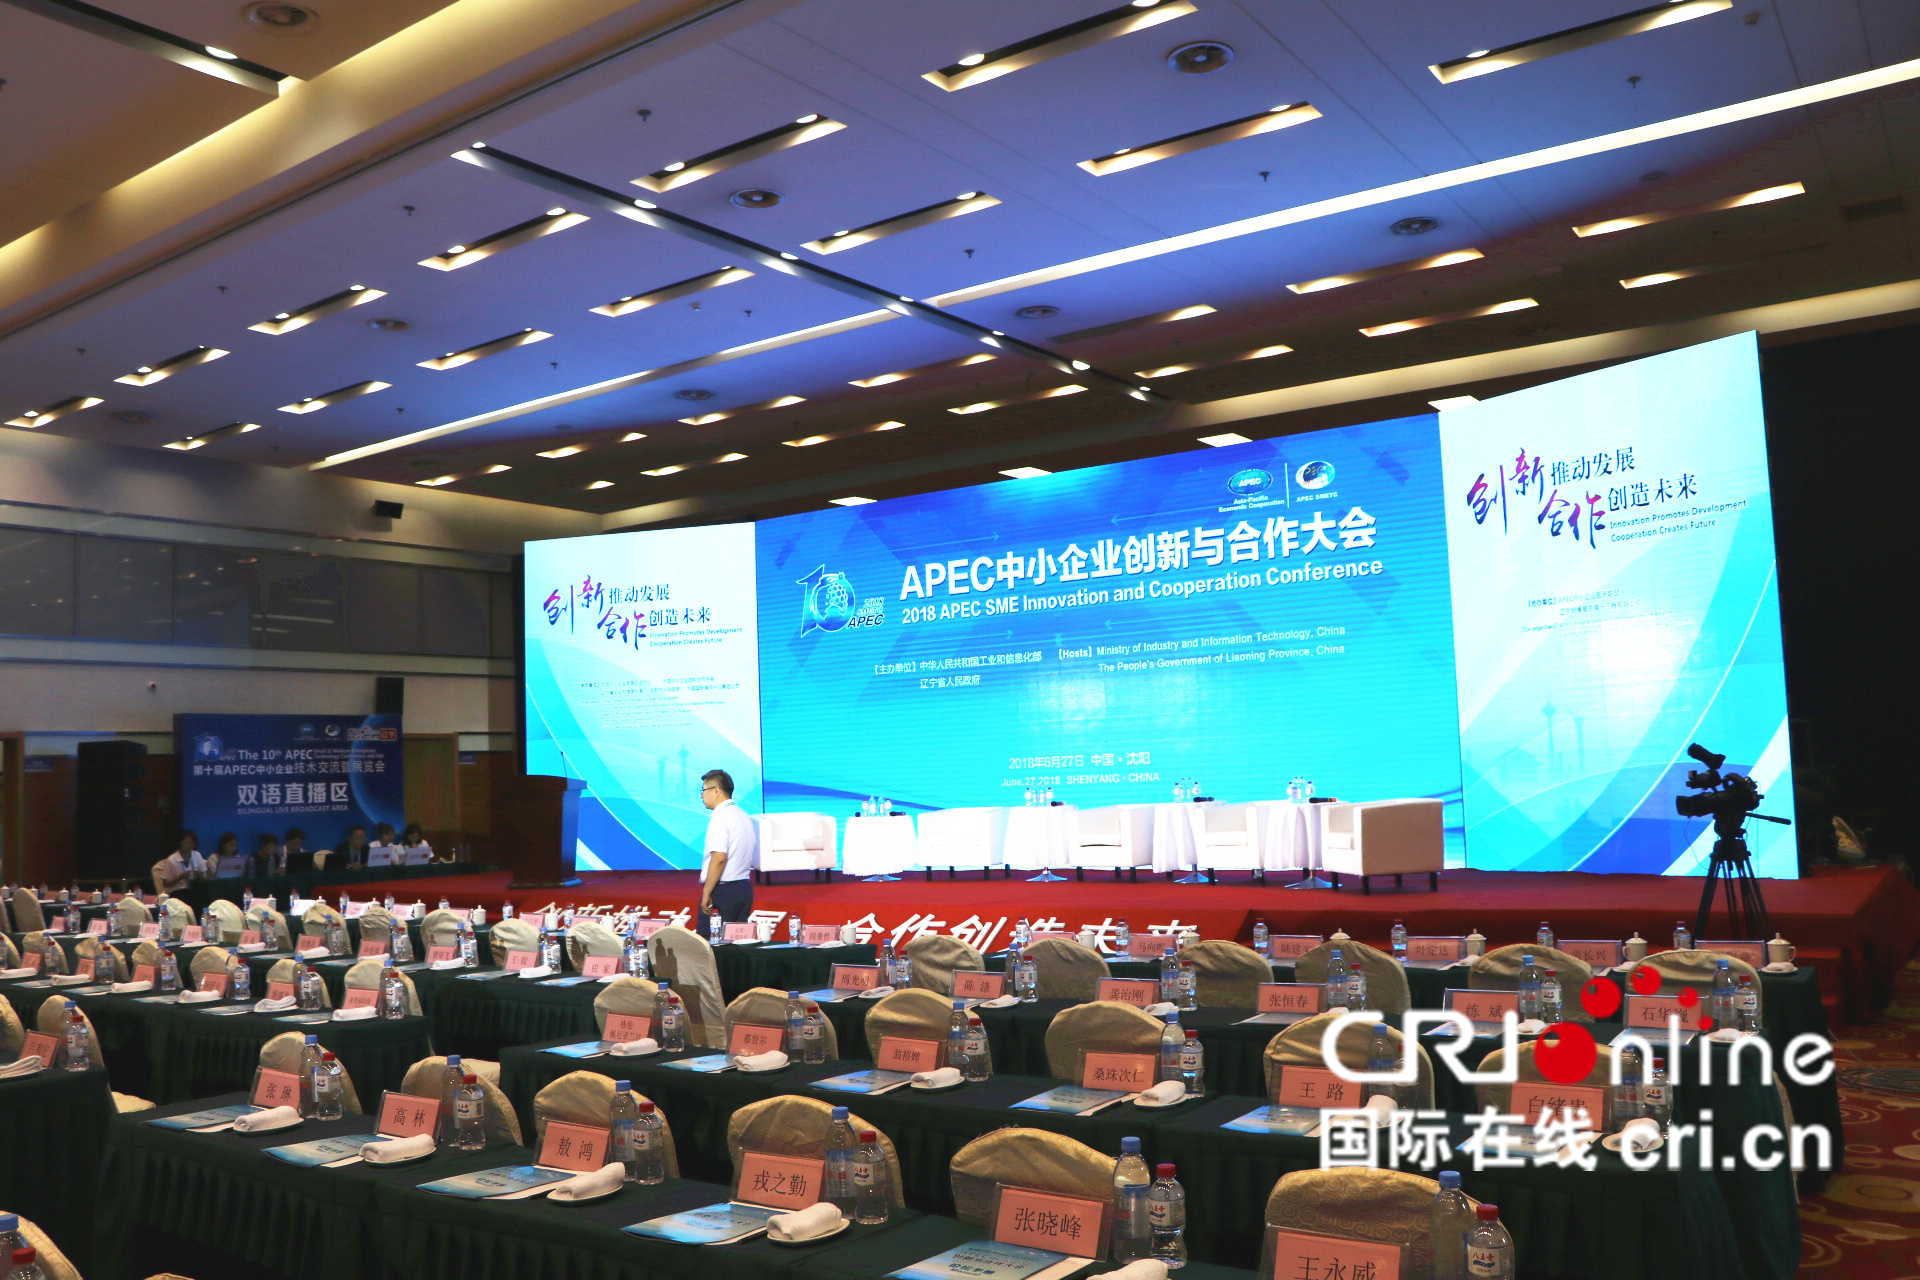 第十届APEC技展会主论坛即将开始，让我们期待各位嘉宾的精彩论述。_fororder_第十届APEC技展会主论坛即将开始，让我们期待各位嘉宾的精彩论述。